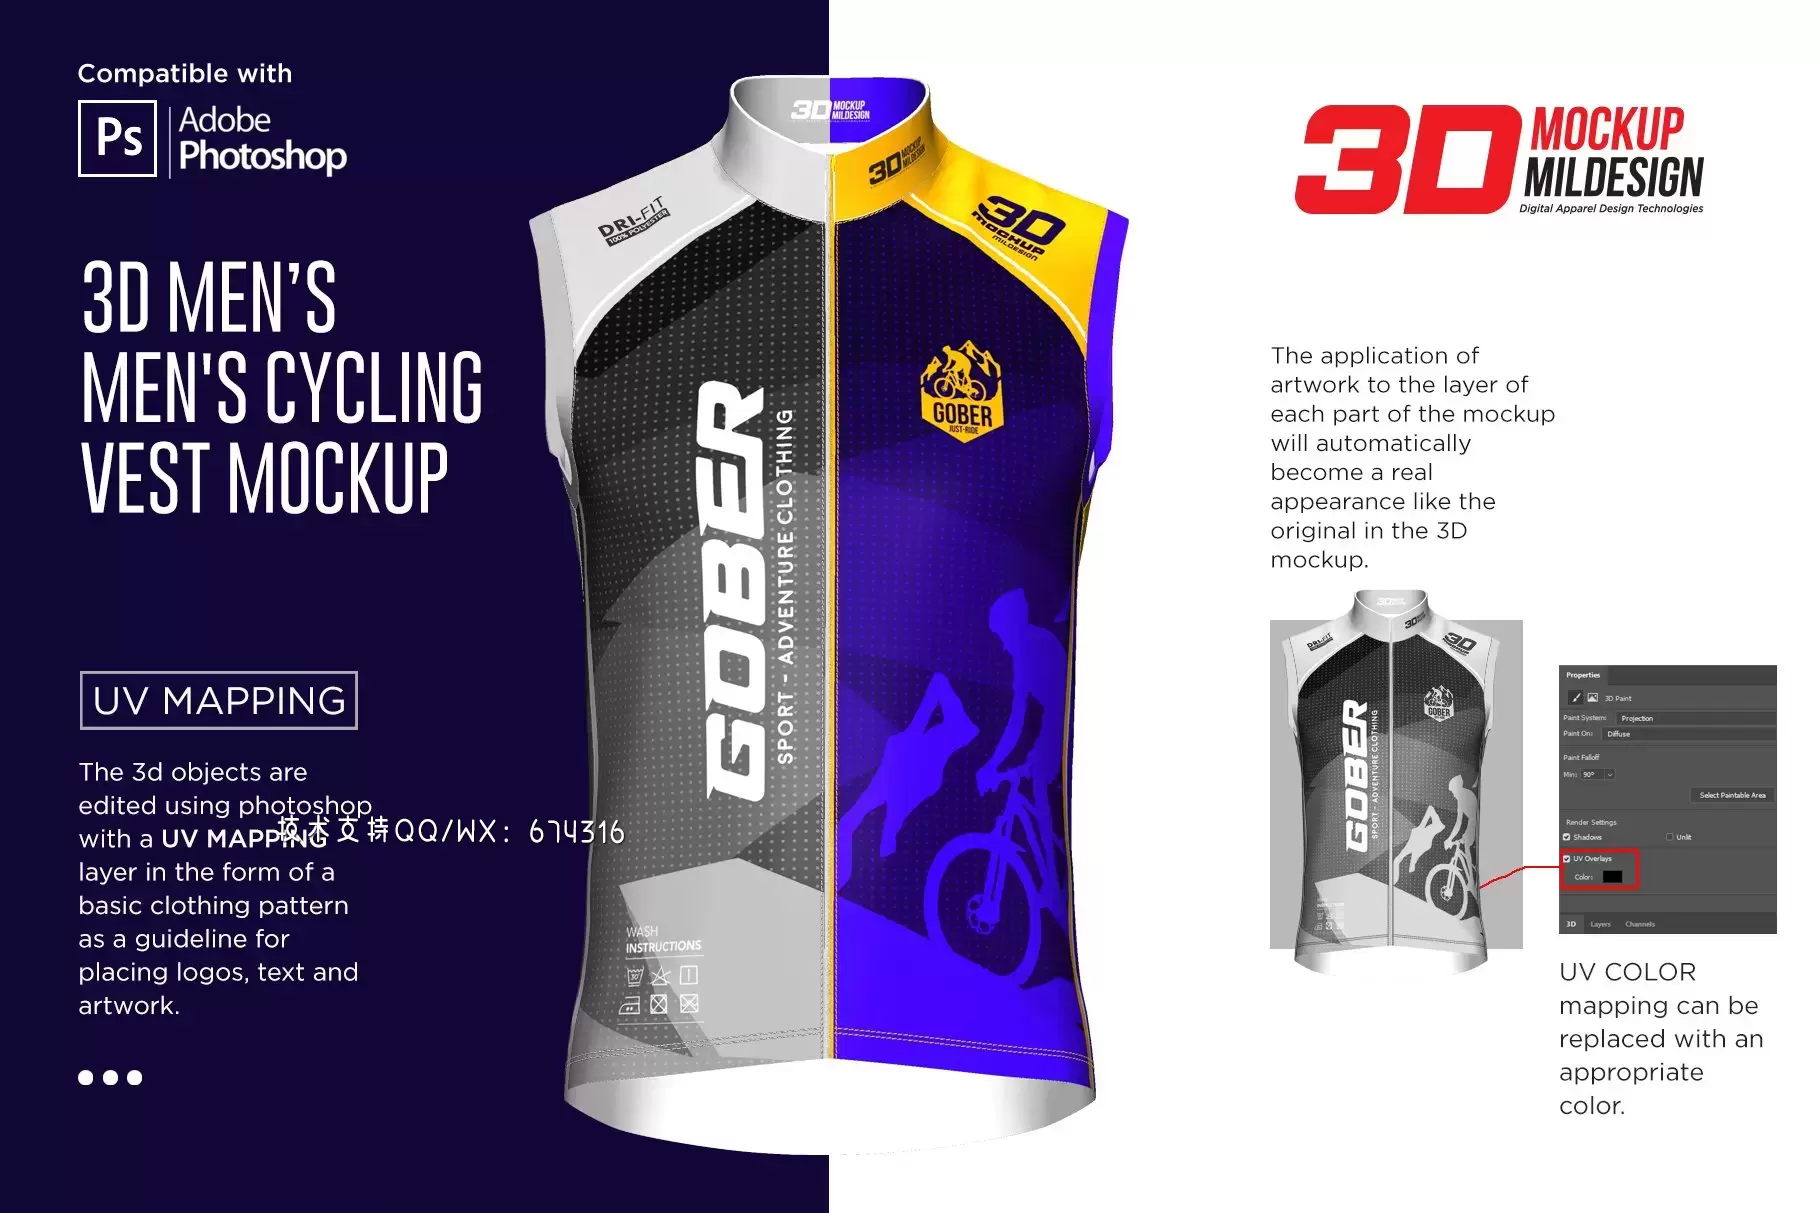 3D男士自行车骑行服无袖背心样机 (psd)免费下载插图8